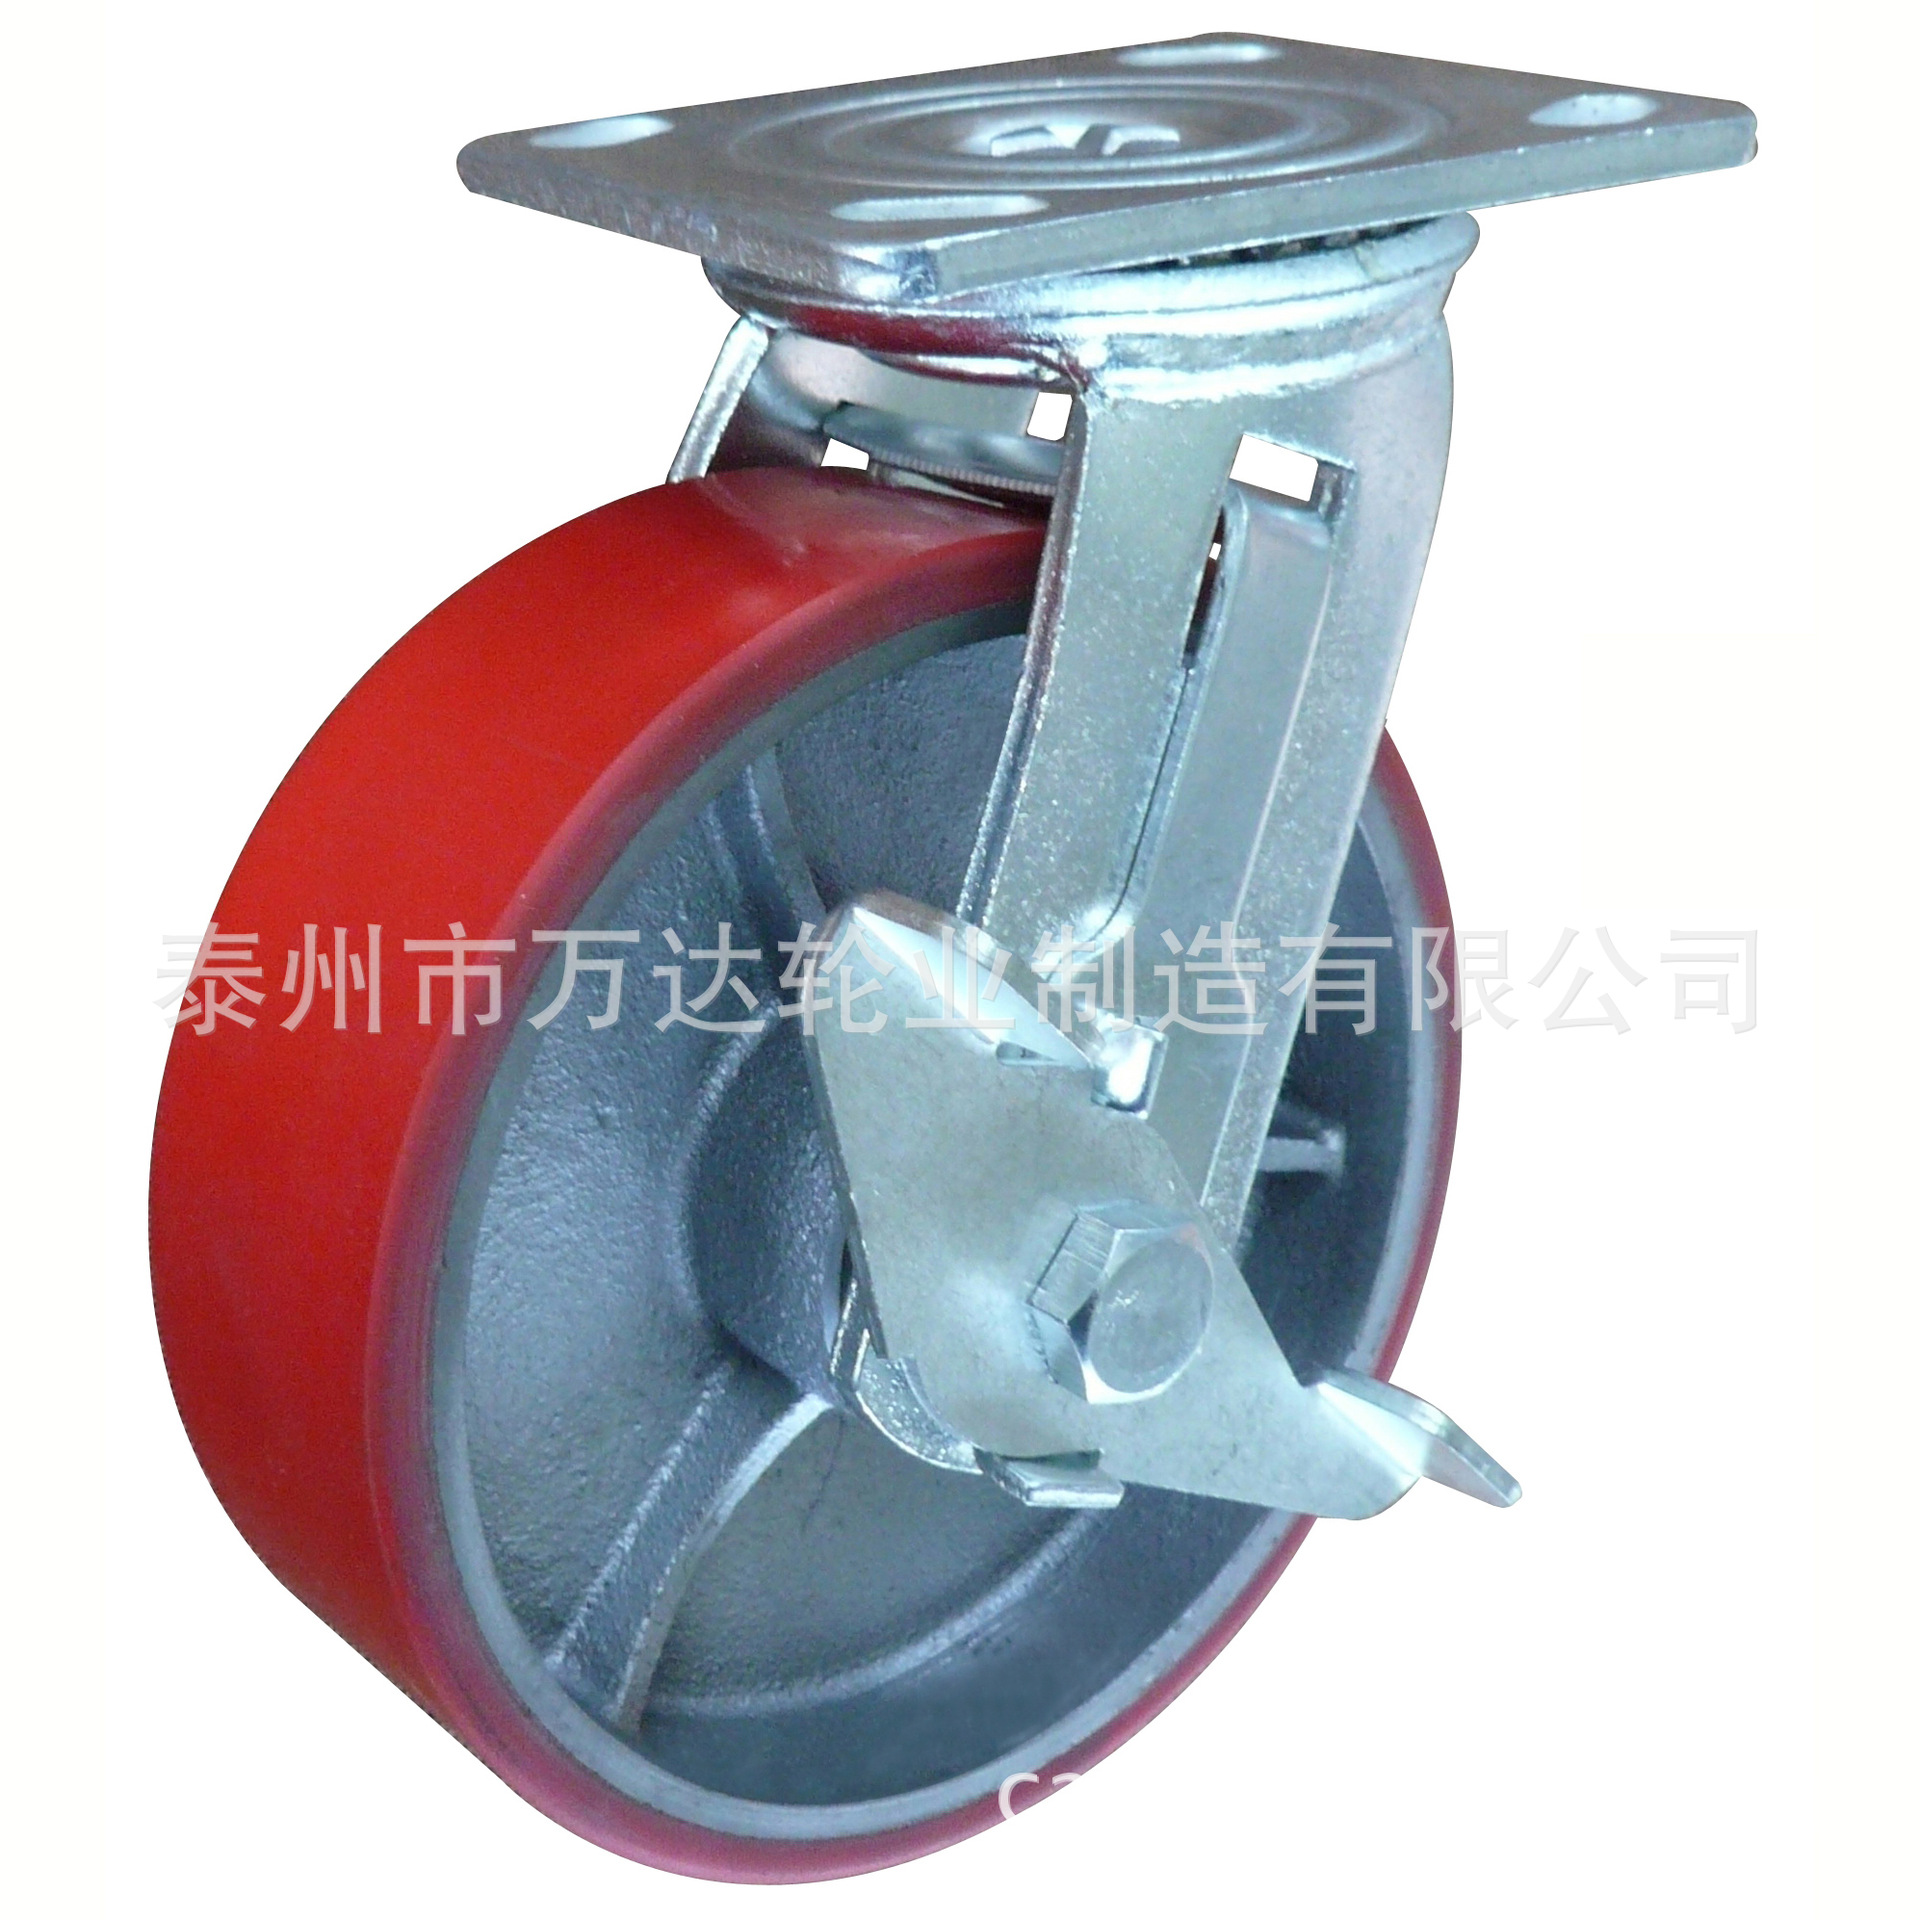 直销供应 6寸铸铁包聚氨酯脚轮 工业万向轮刹车轮 铸铁重型脚轮图片